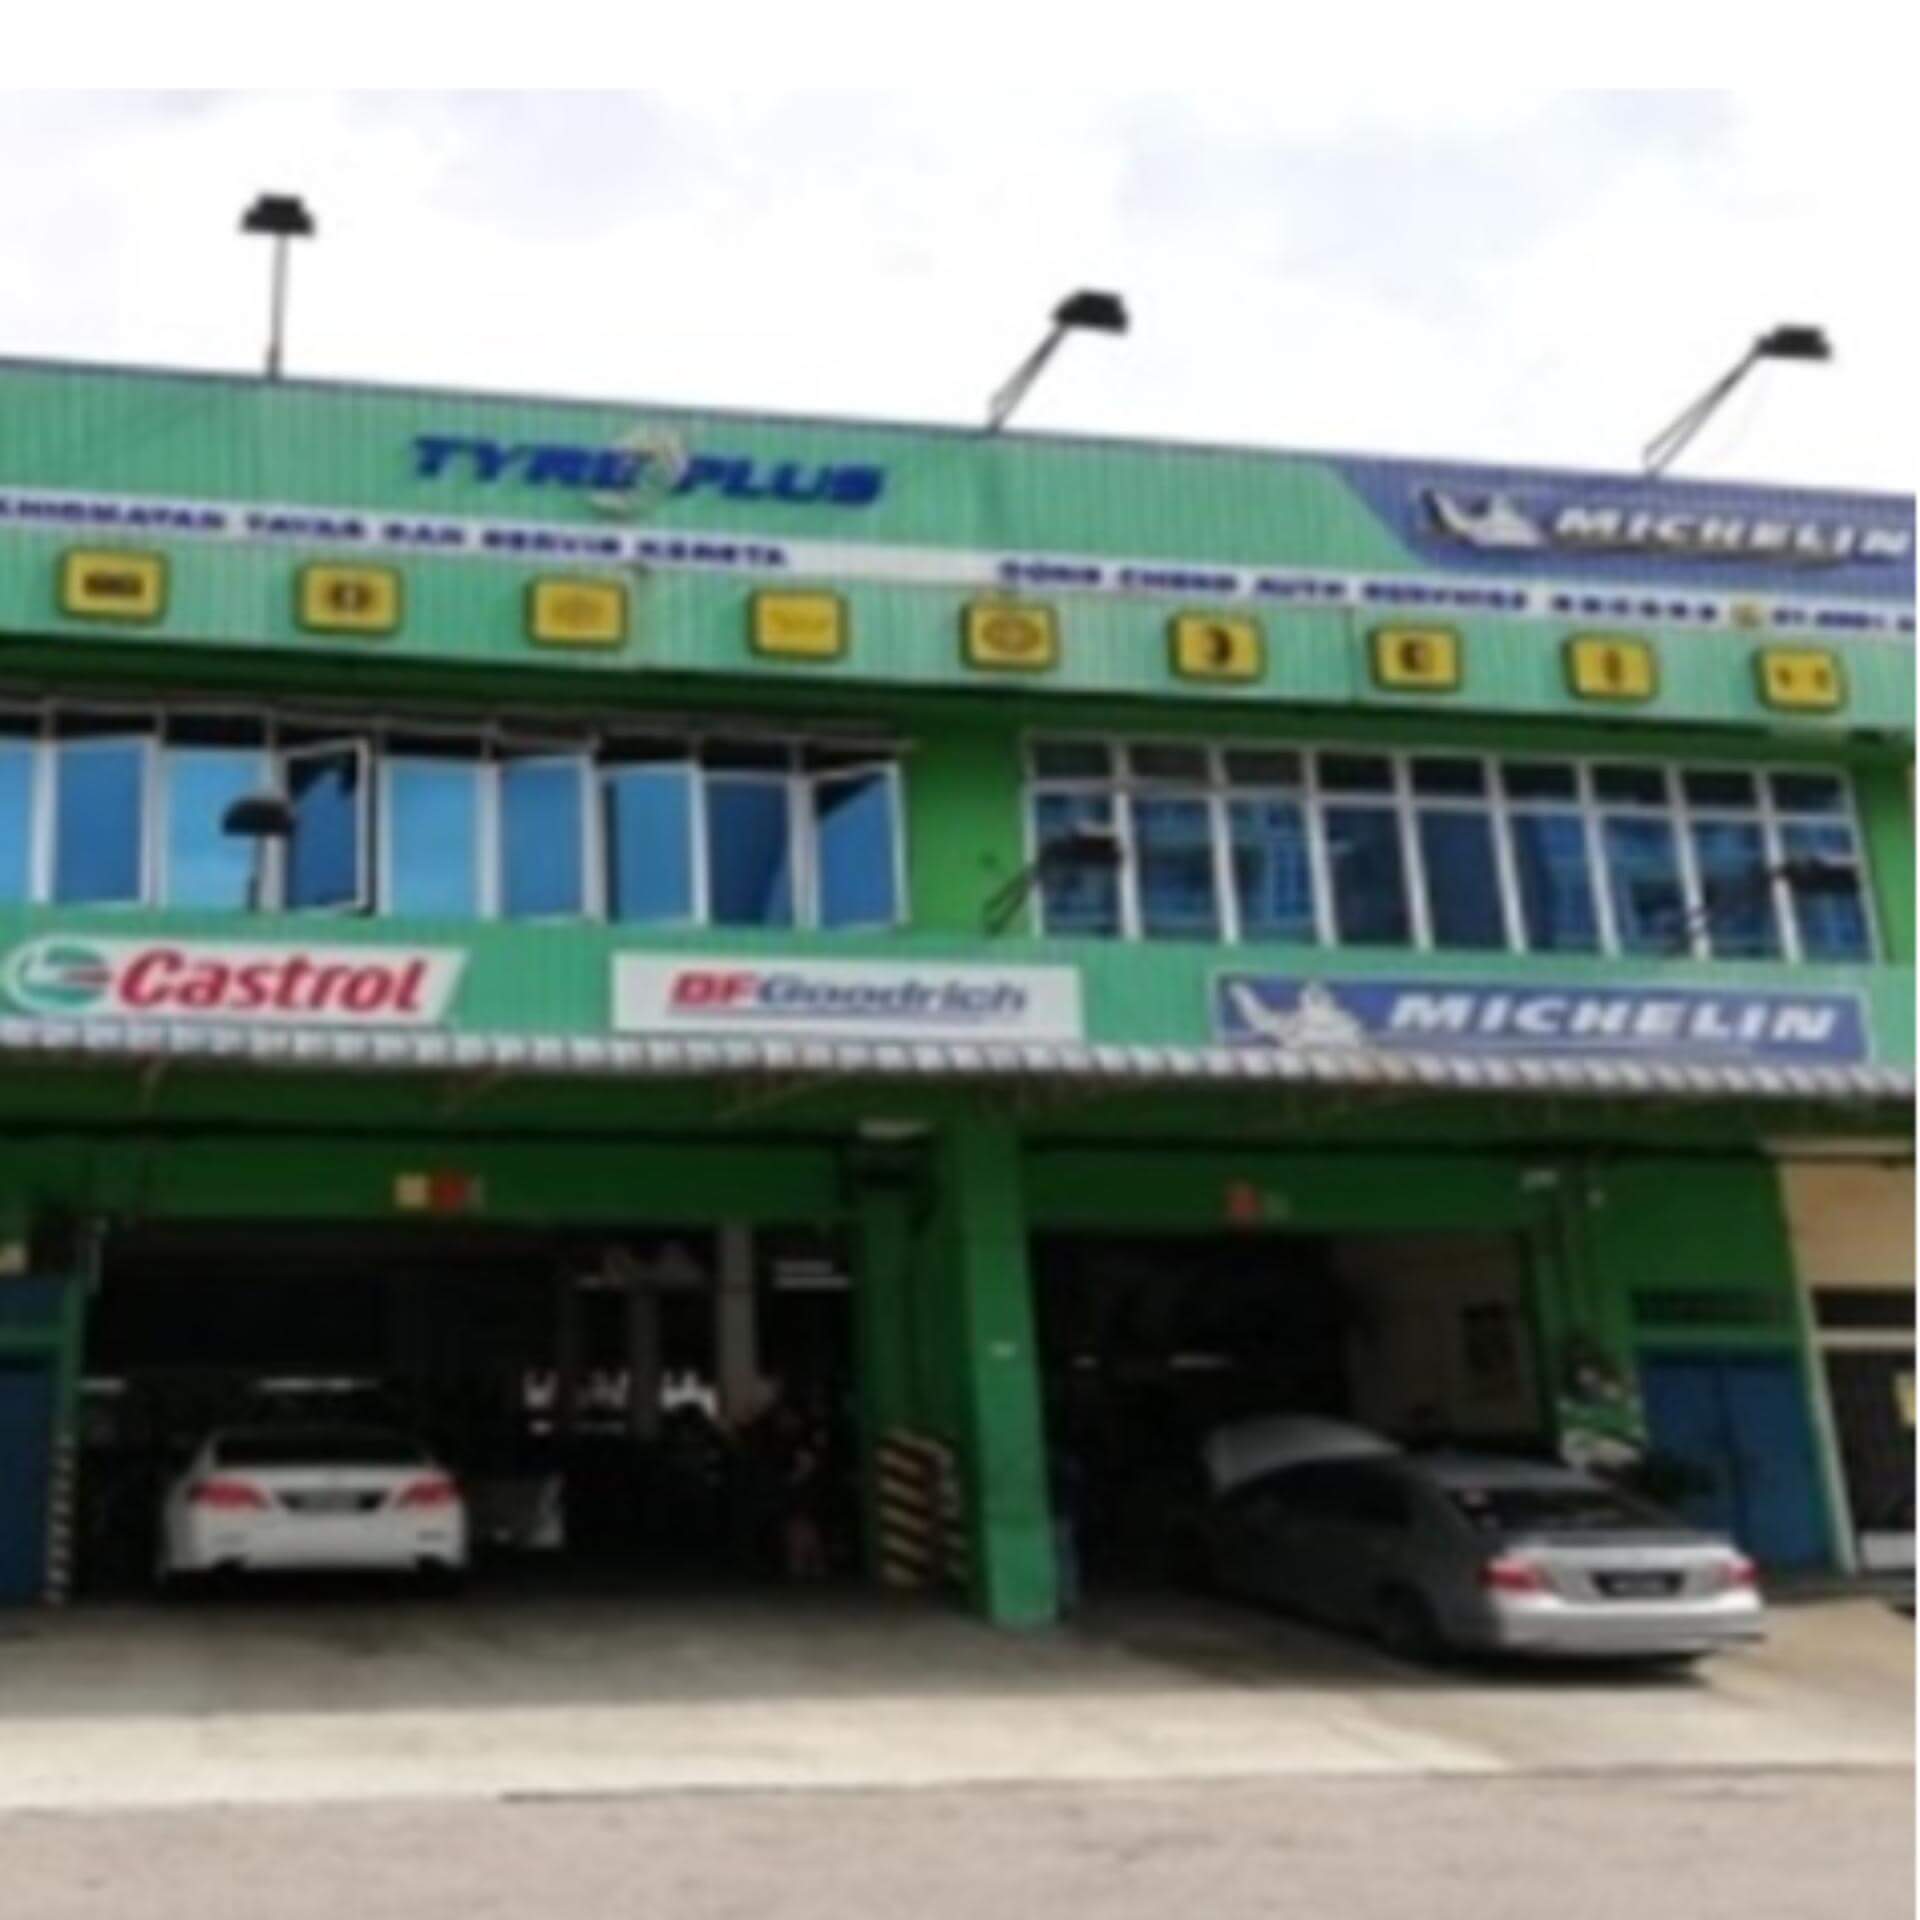 Tyreplus - Dong Cheng Auto Services Senai